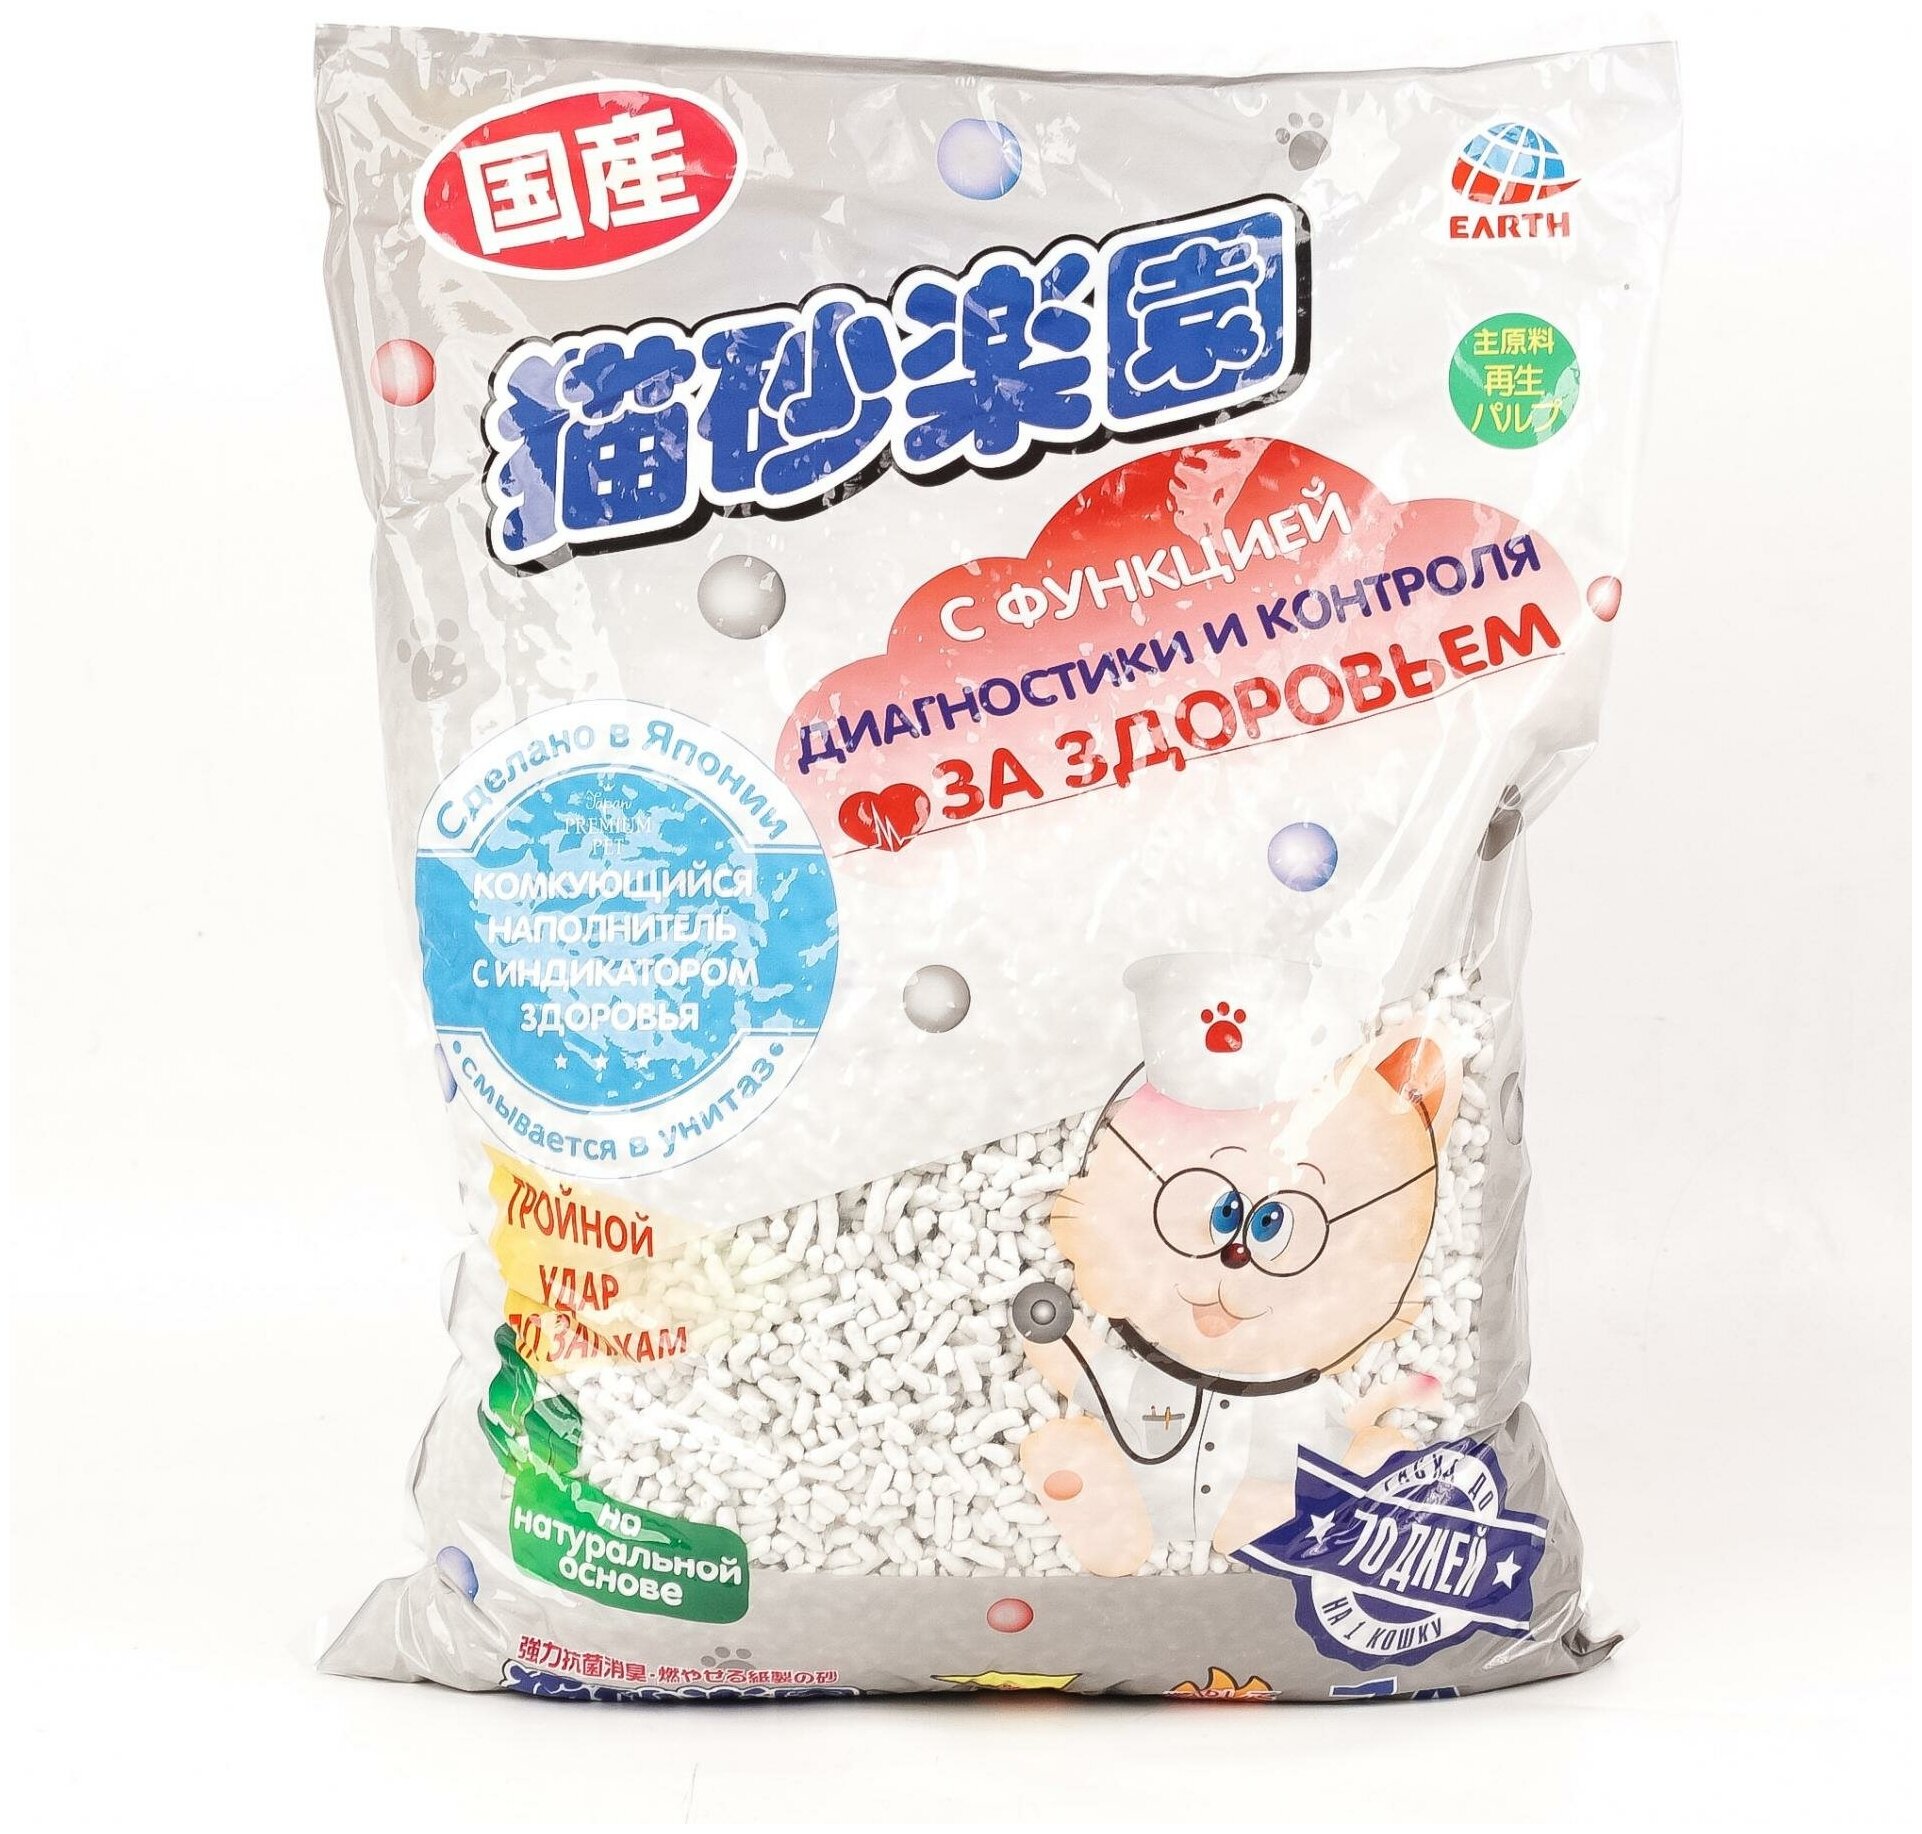 Наполнитель для кошачьего туалета комкующийся Japan Premium Pet С индикатором здоровья, 7 л